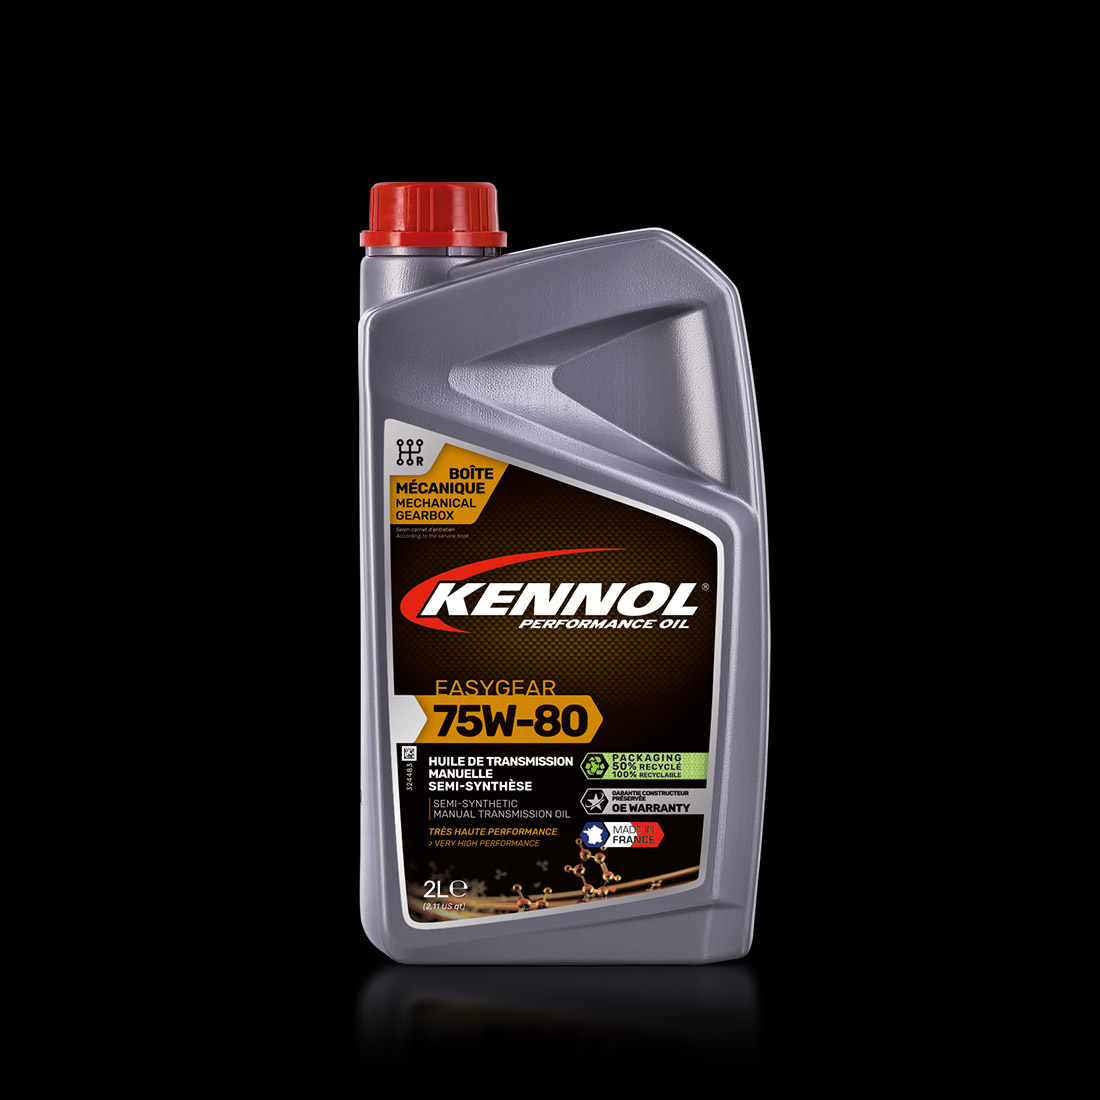 EASYGEAR 75W-80  KENNOL - Performance Oil